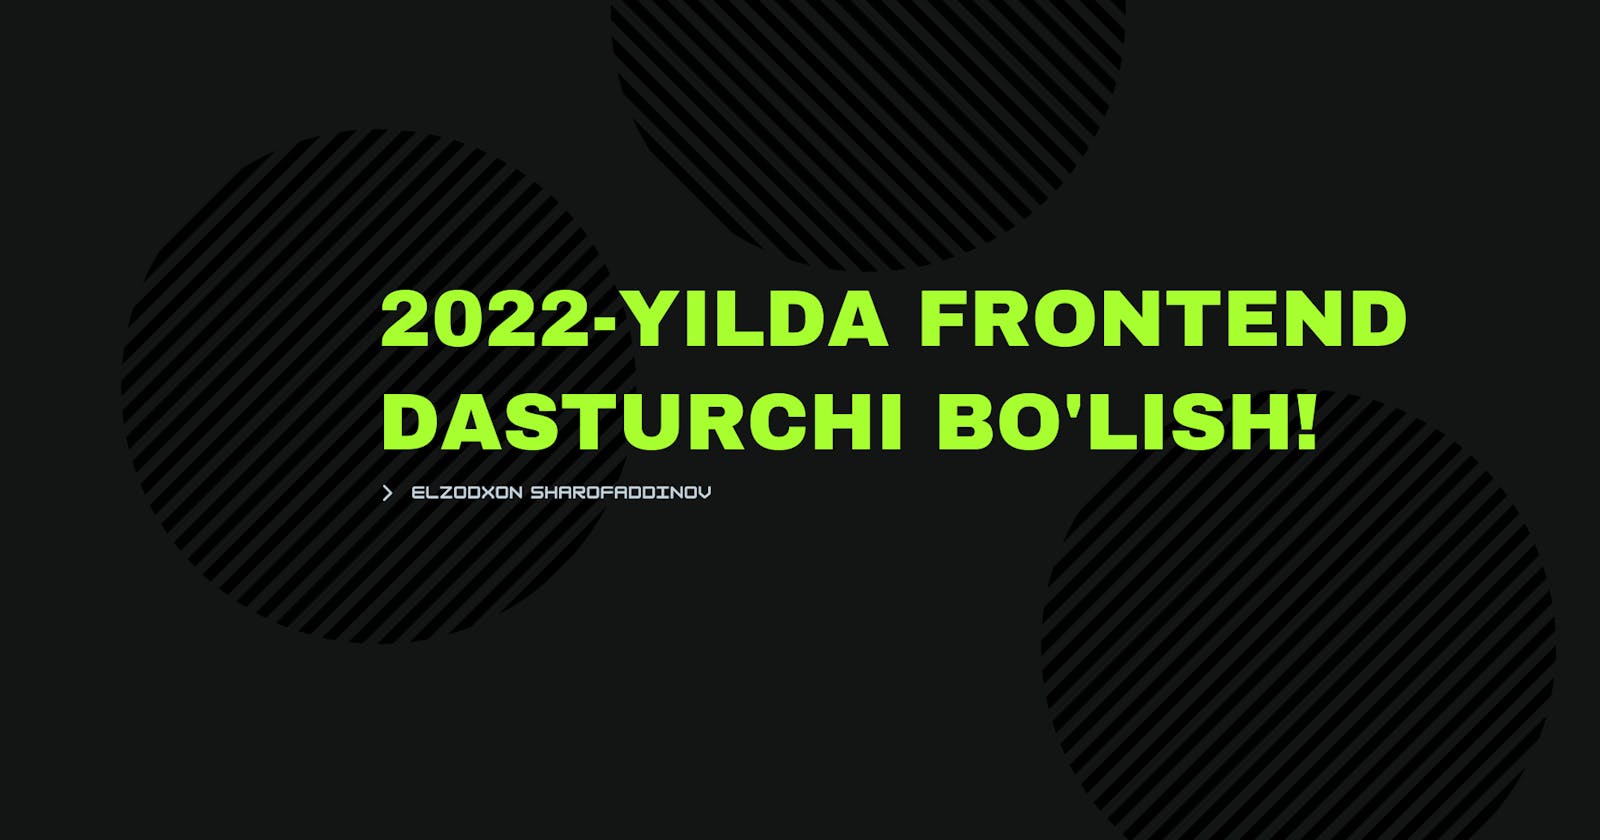 2022-yilda Frontend dasturchi bo'lish